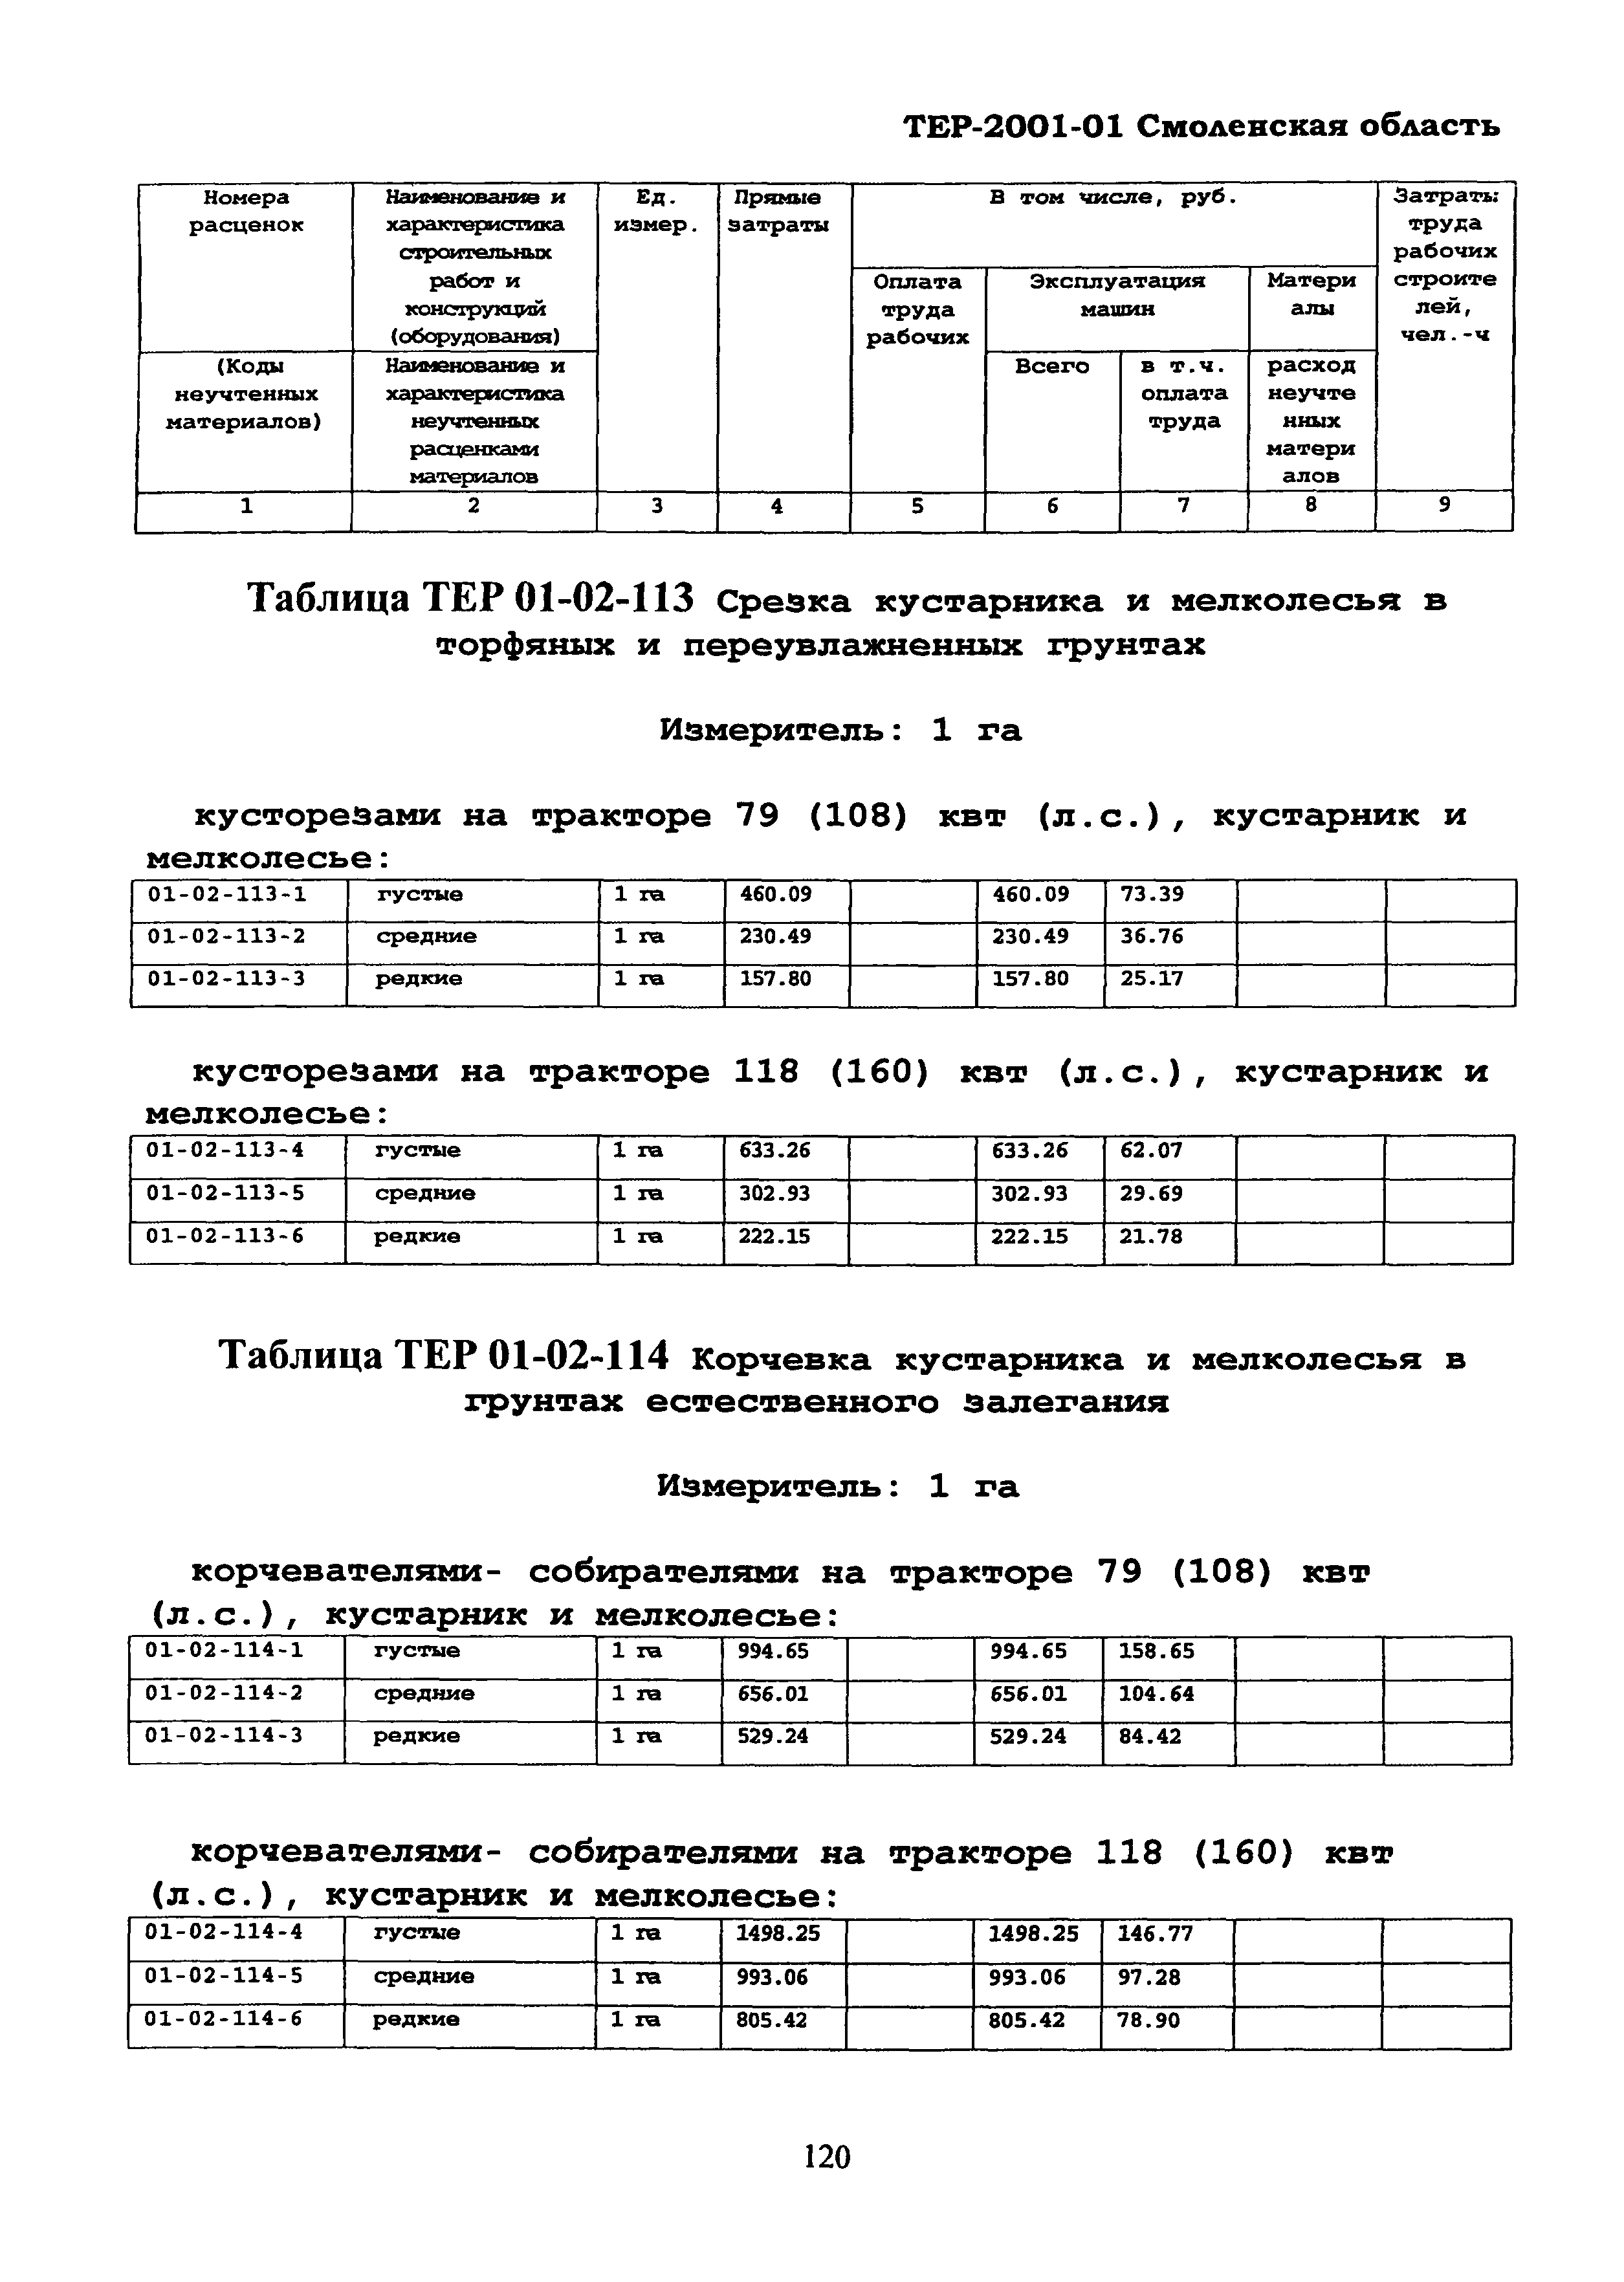 ТЕР Смоленской обл. 2001-01